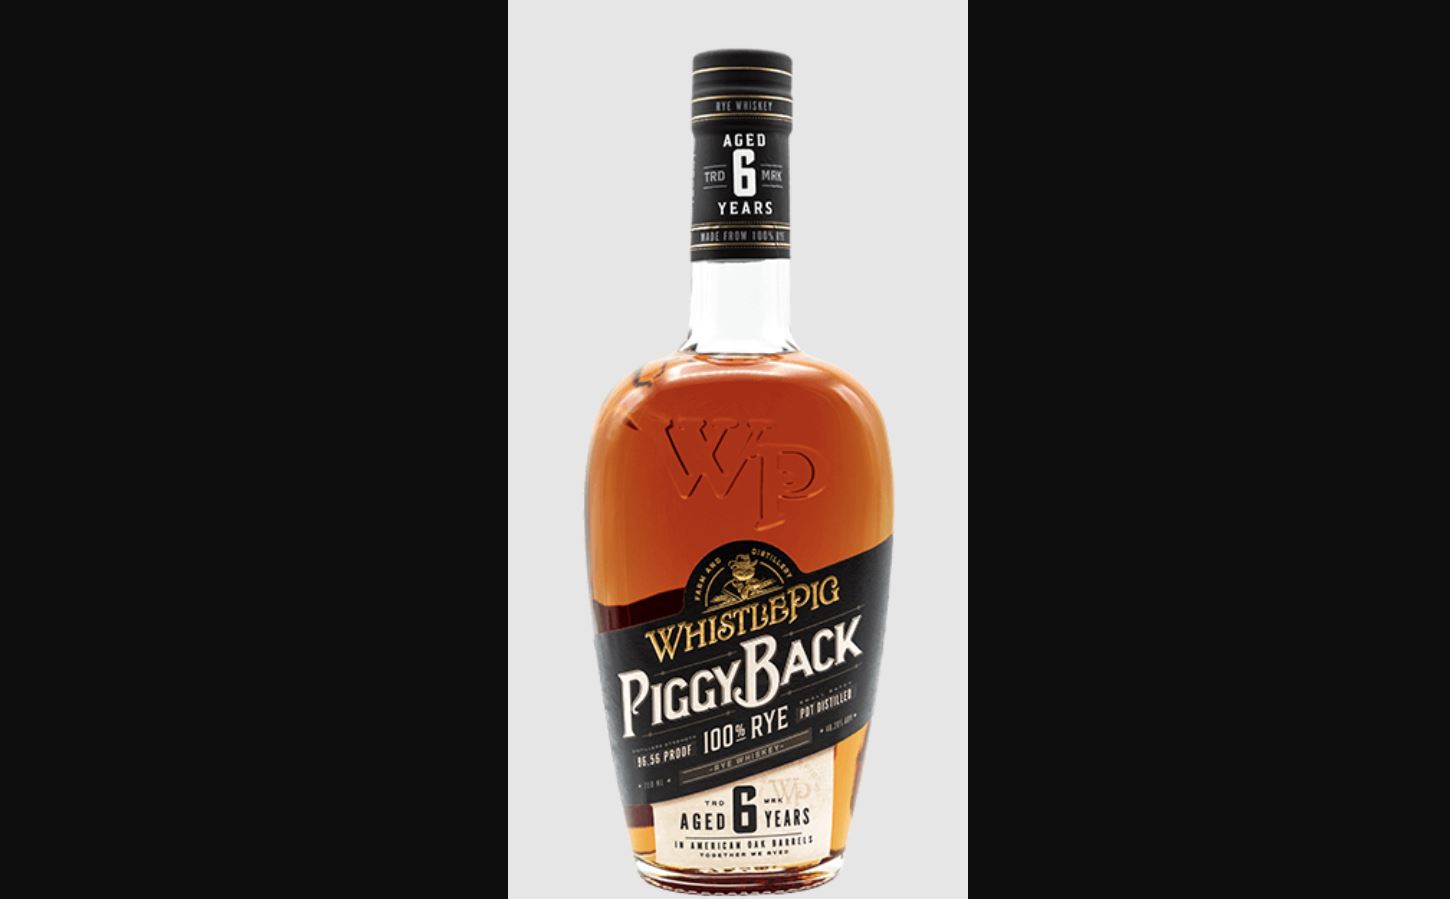 WhistlePig PiggyBack Rye